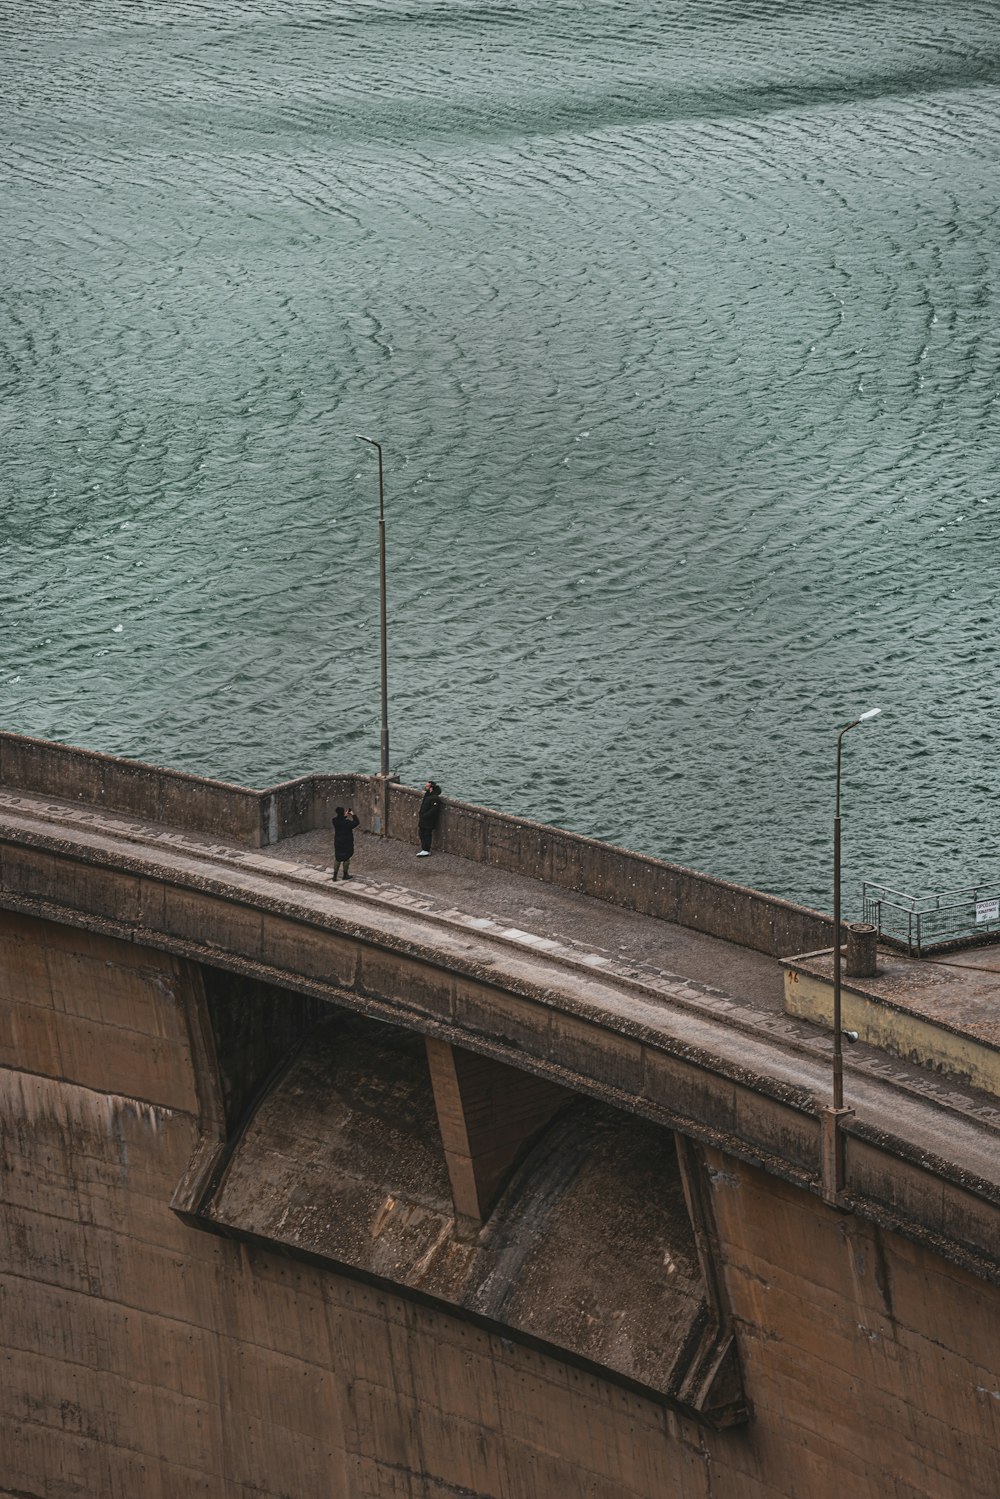 deux personnes debout sur un pont surplombant l’eau